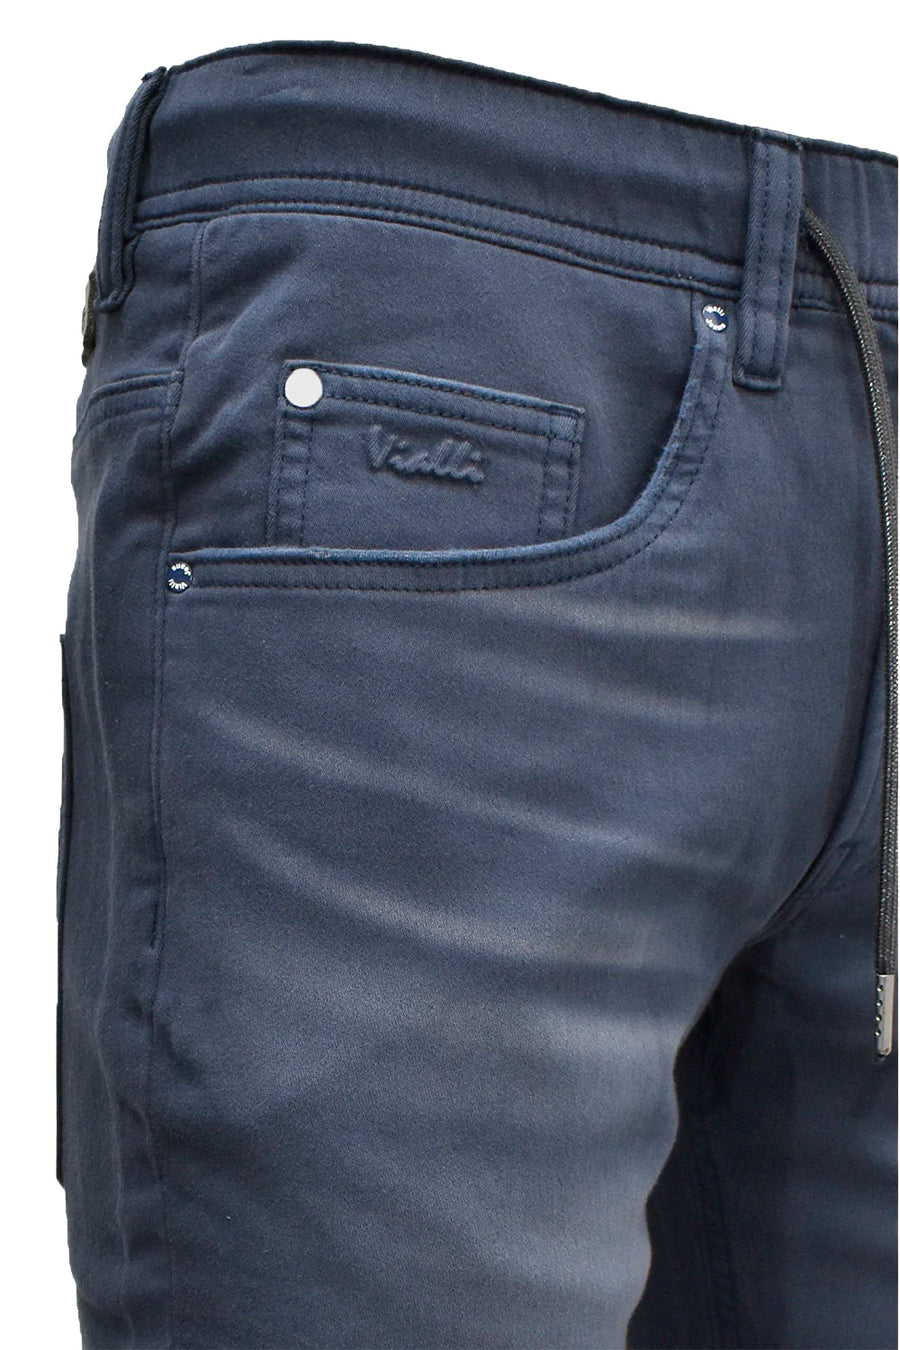 Modoro Strato-Fit Jeans*